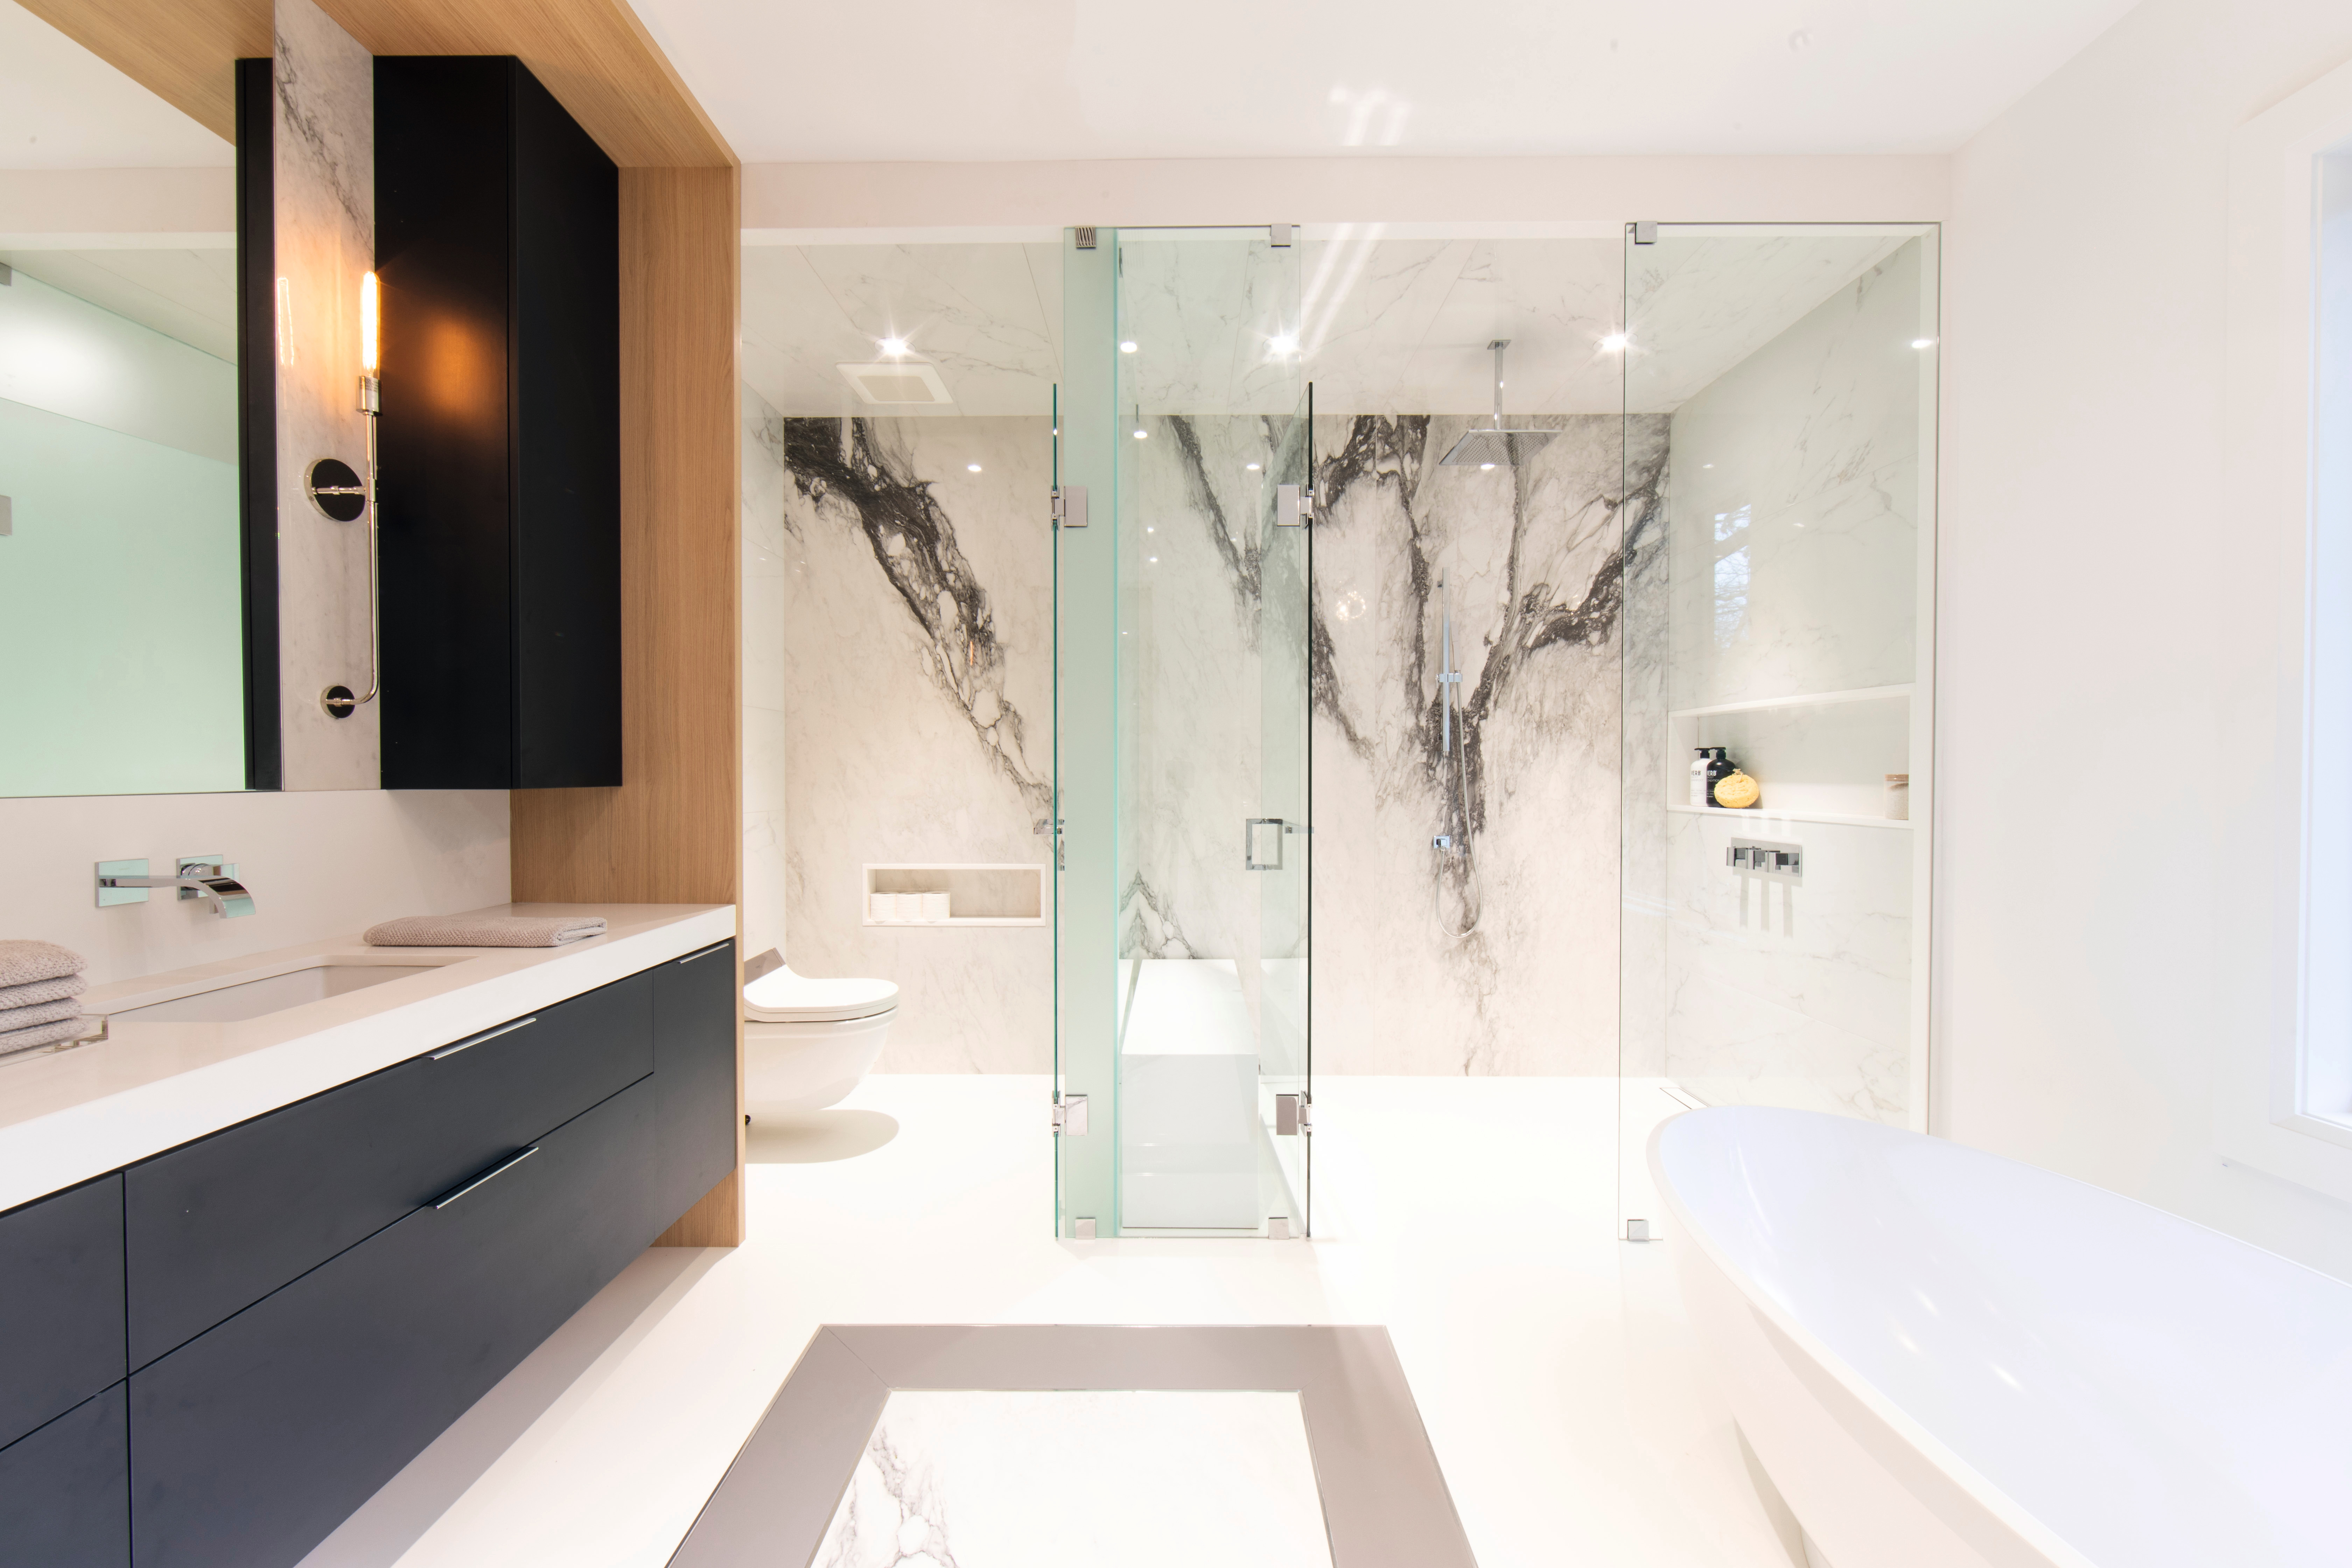 Črni detajli v kombinaciji z svetlim lesnim dekorjem in elegantnim marmorjem spremenijo kopalnico v oazo dobrega počutja.